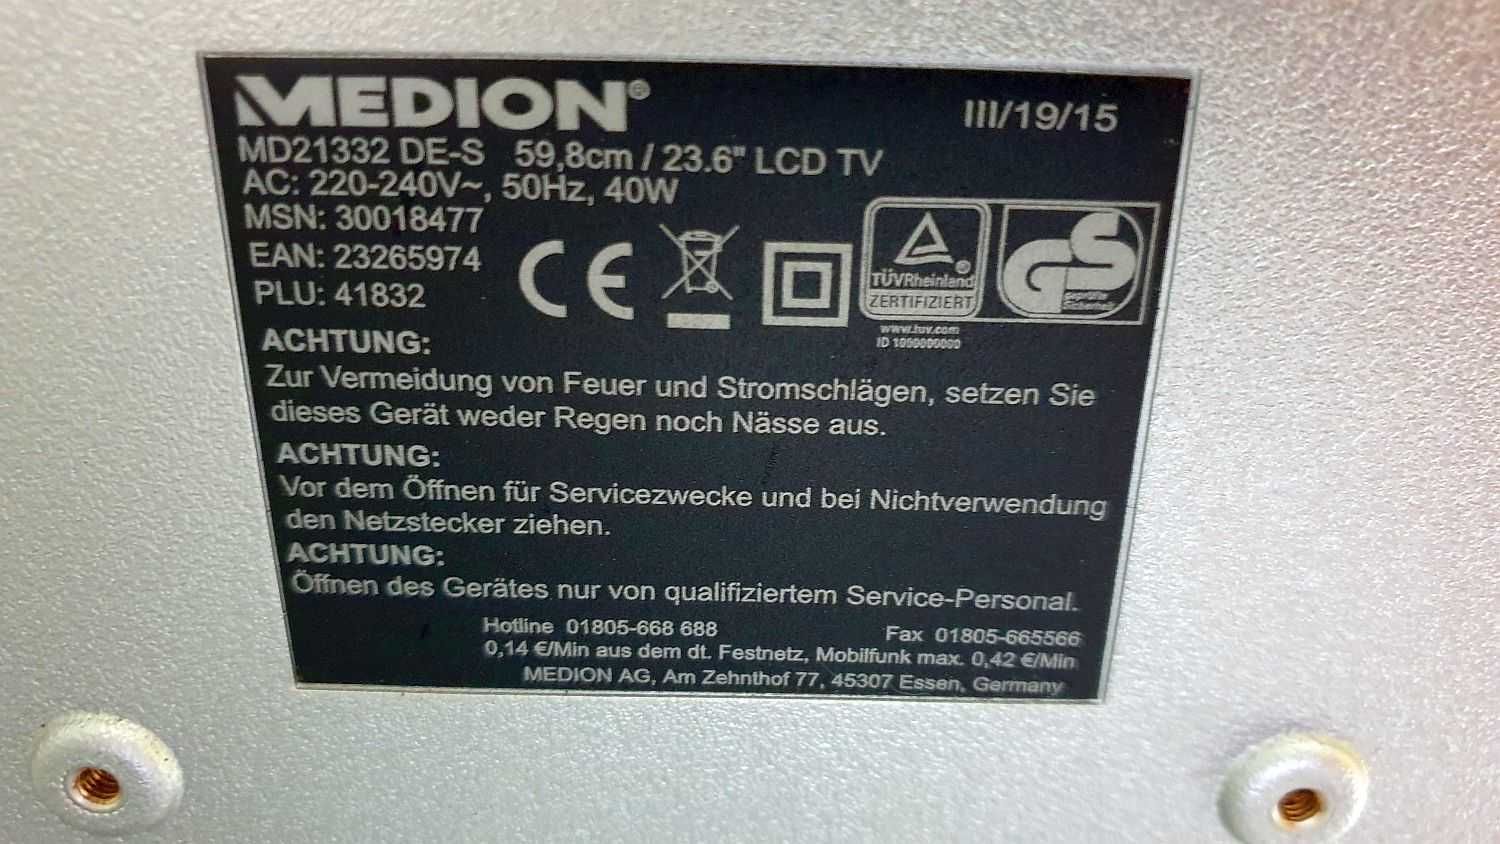 Telewizor Medion MD21332 HDMI Full HD 23,6" cale